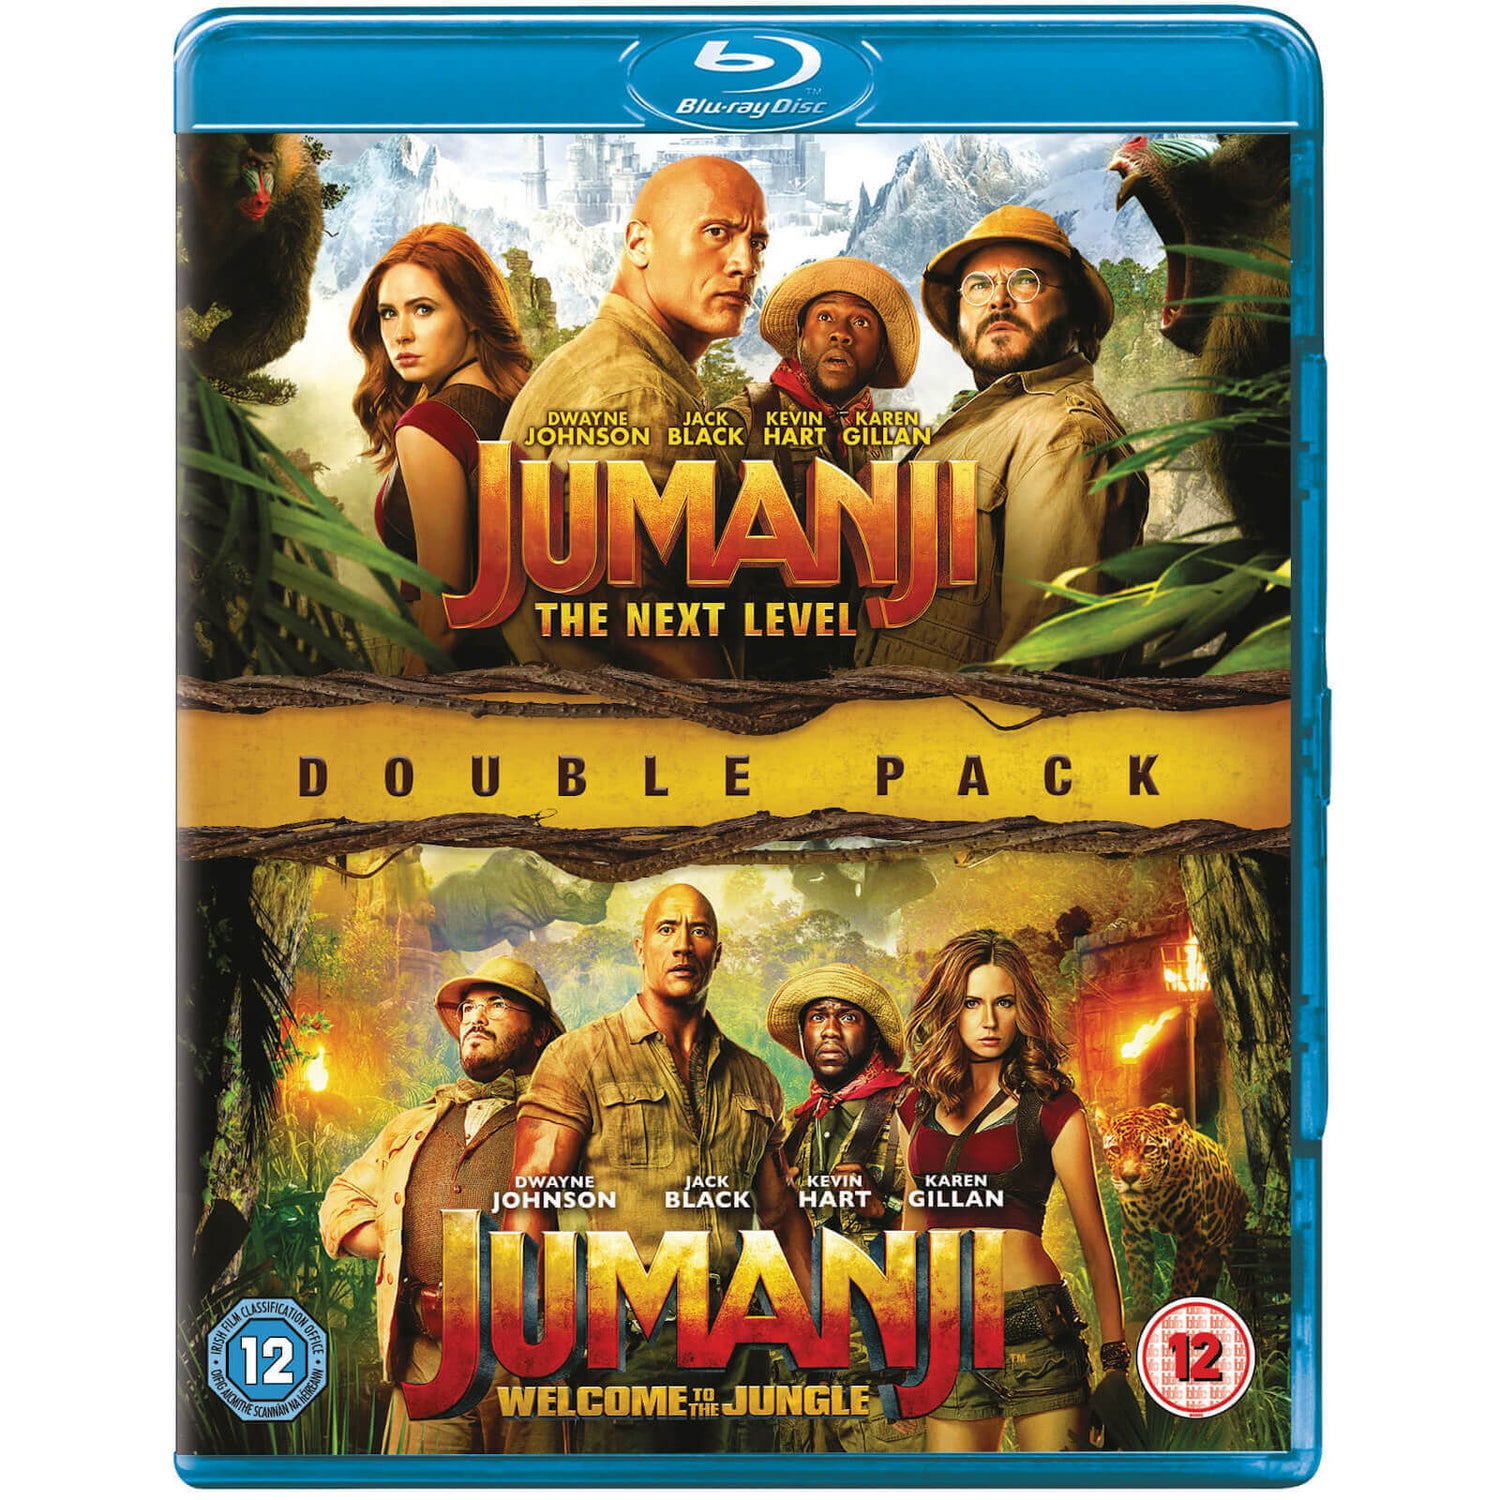 Jumanji 3 release date